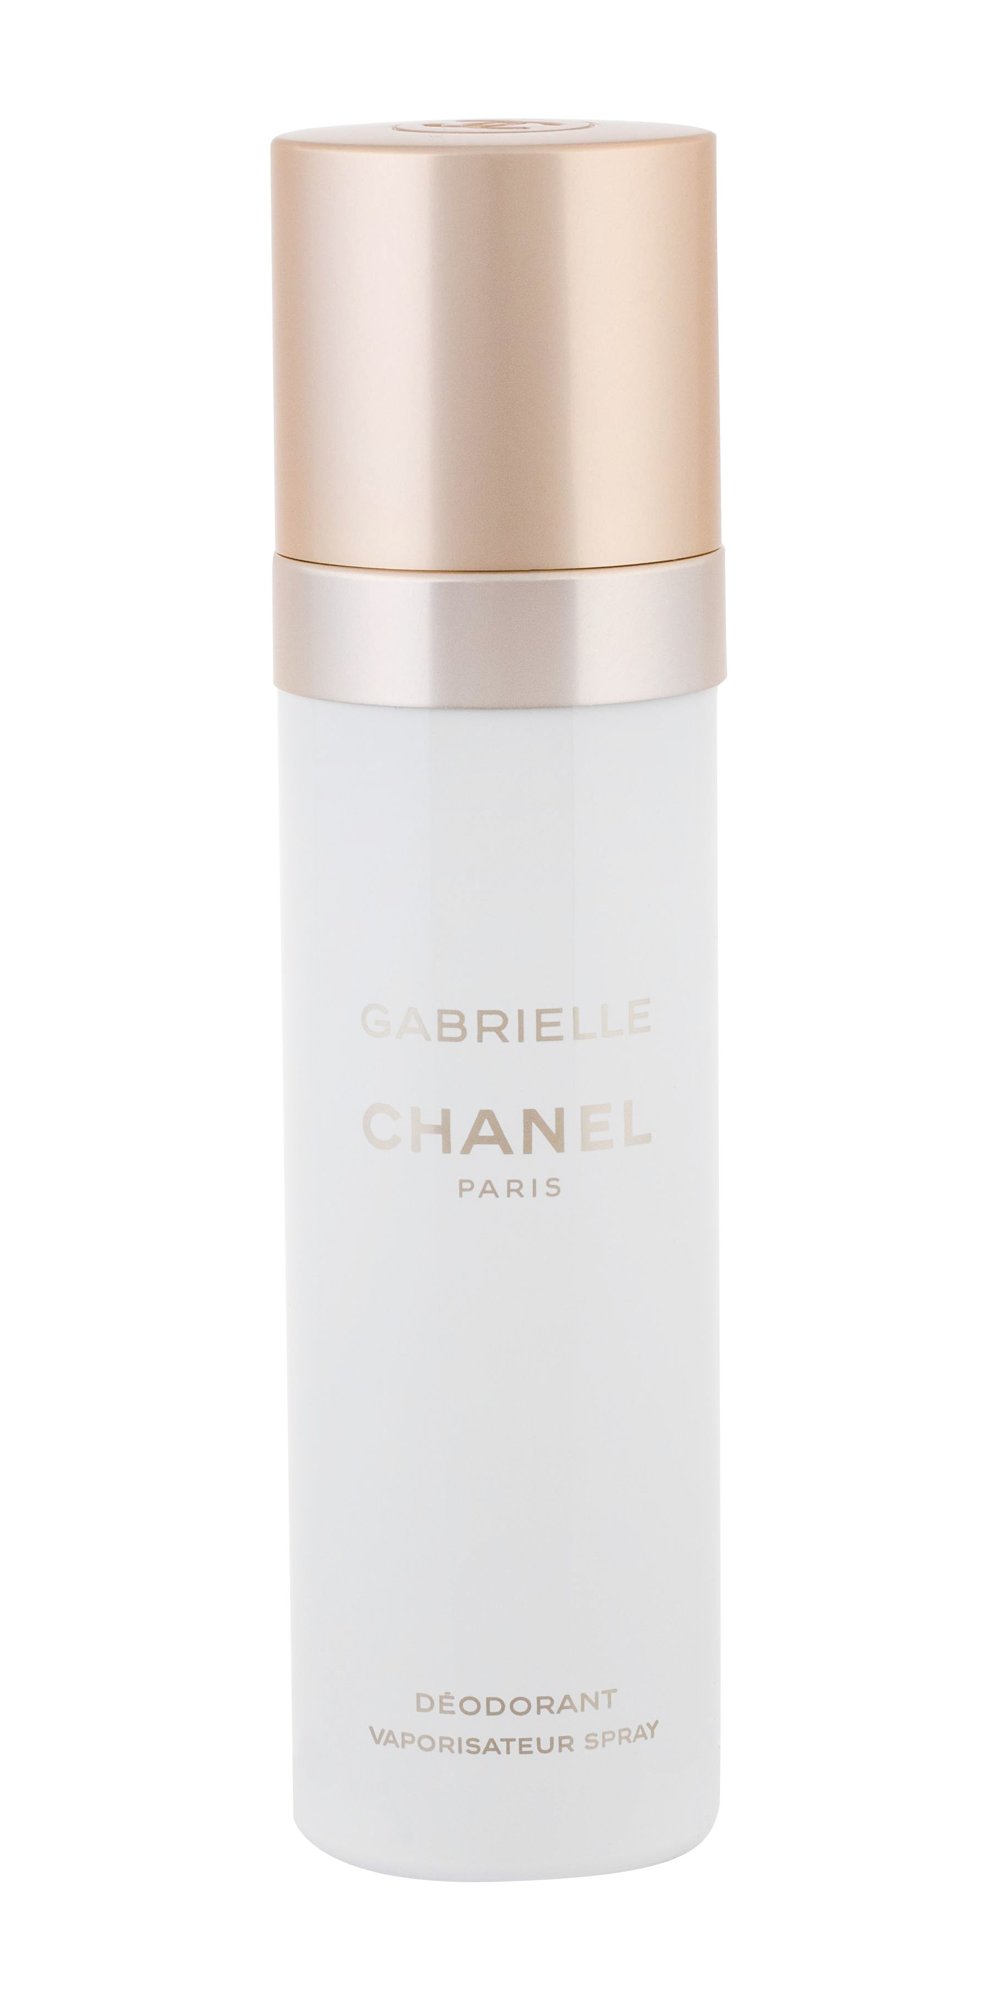 Chanel Gabrielle, Deodorant 100ml